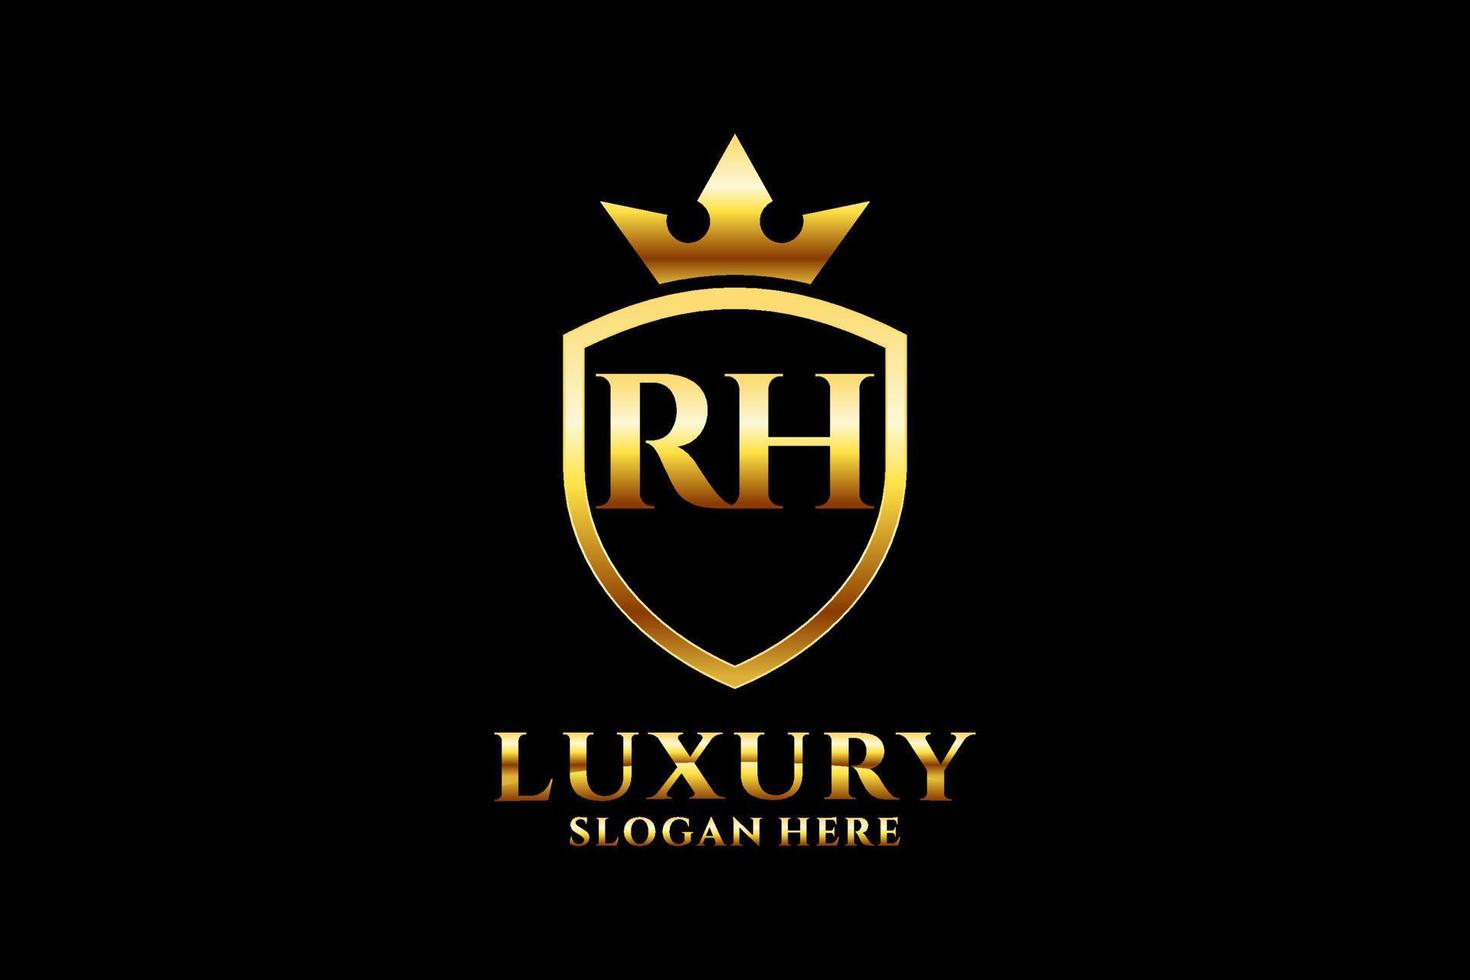 Initiale rh elegantes Luxus-Monogramm-Logo oder Abzeichen-Vorlage mit Schriftrollen und Königskrone – perfekt für luxuriöse Branding-Projekte vektor